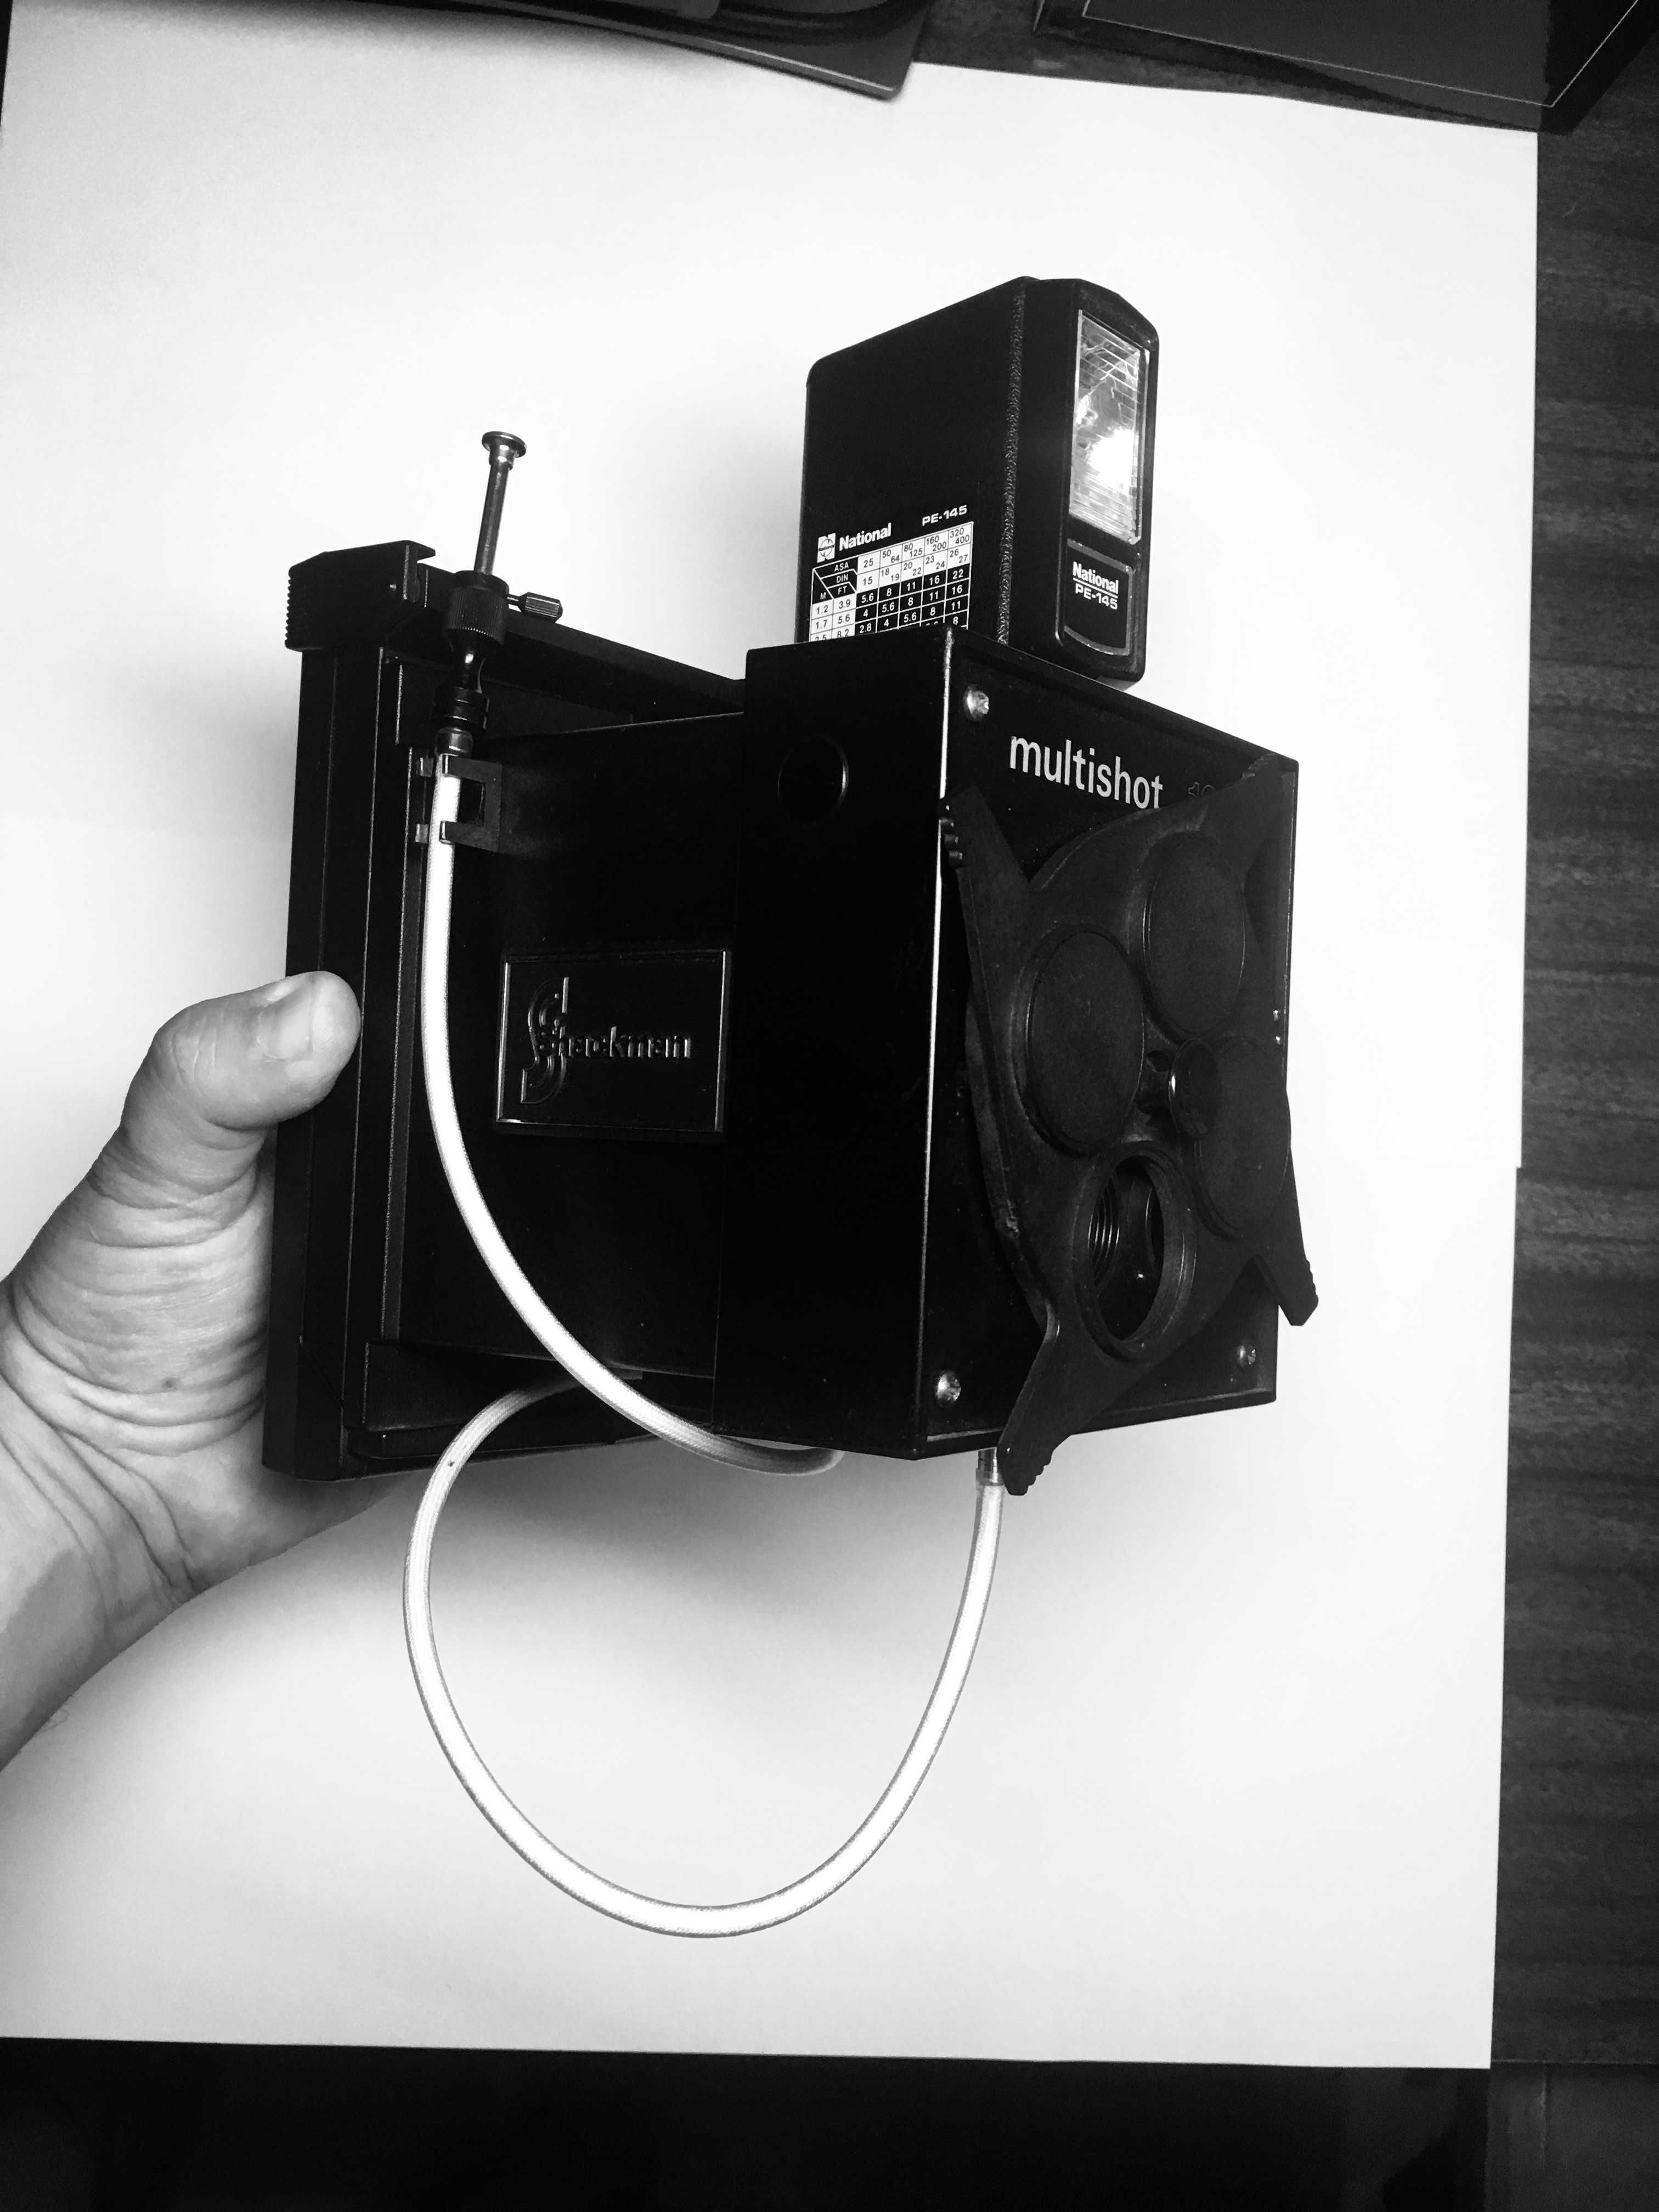 Polaroid schackman multishot 104 com disco, flash e cabo disparador